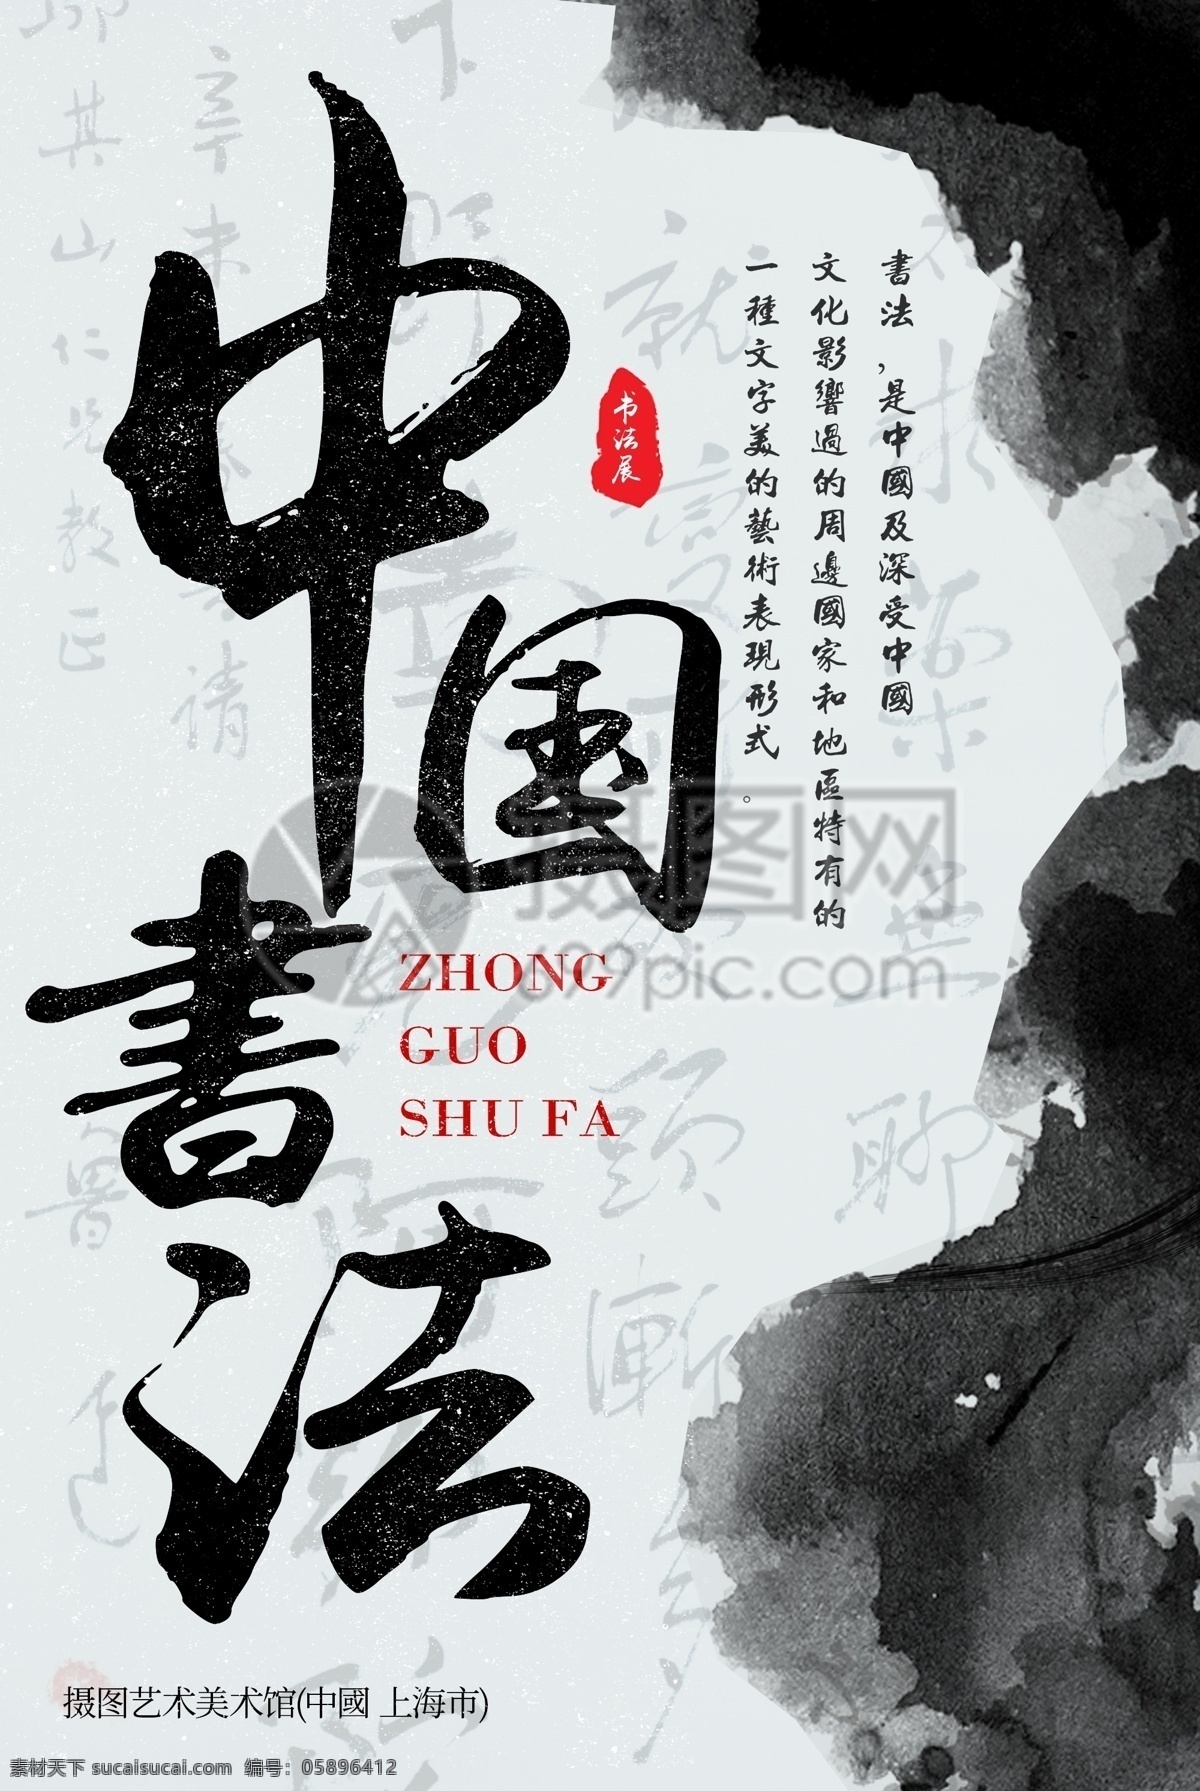 中国 书法展 海报 书法 中国风 文化 大气 磅礴 笔墨 展览 书法展览 艺术展